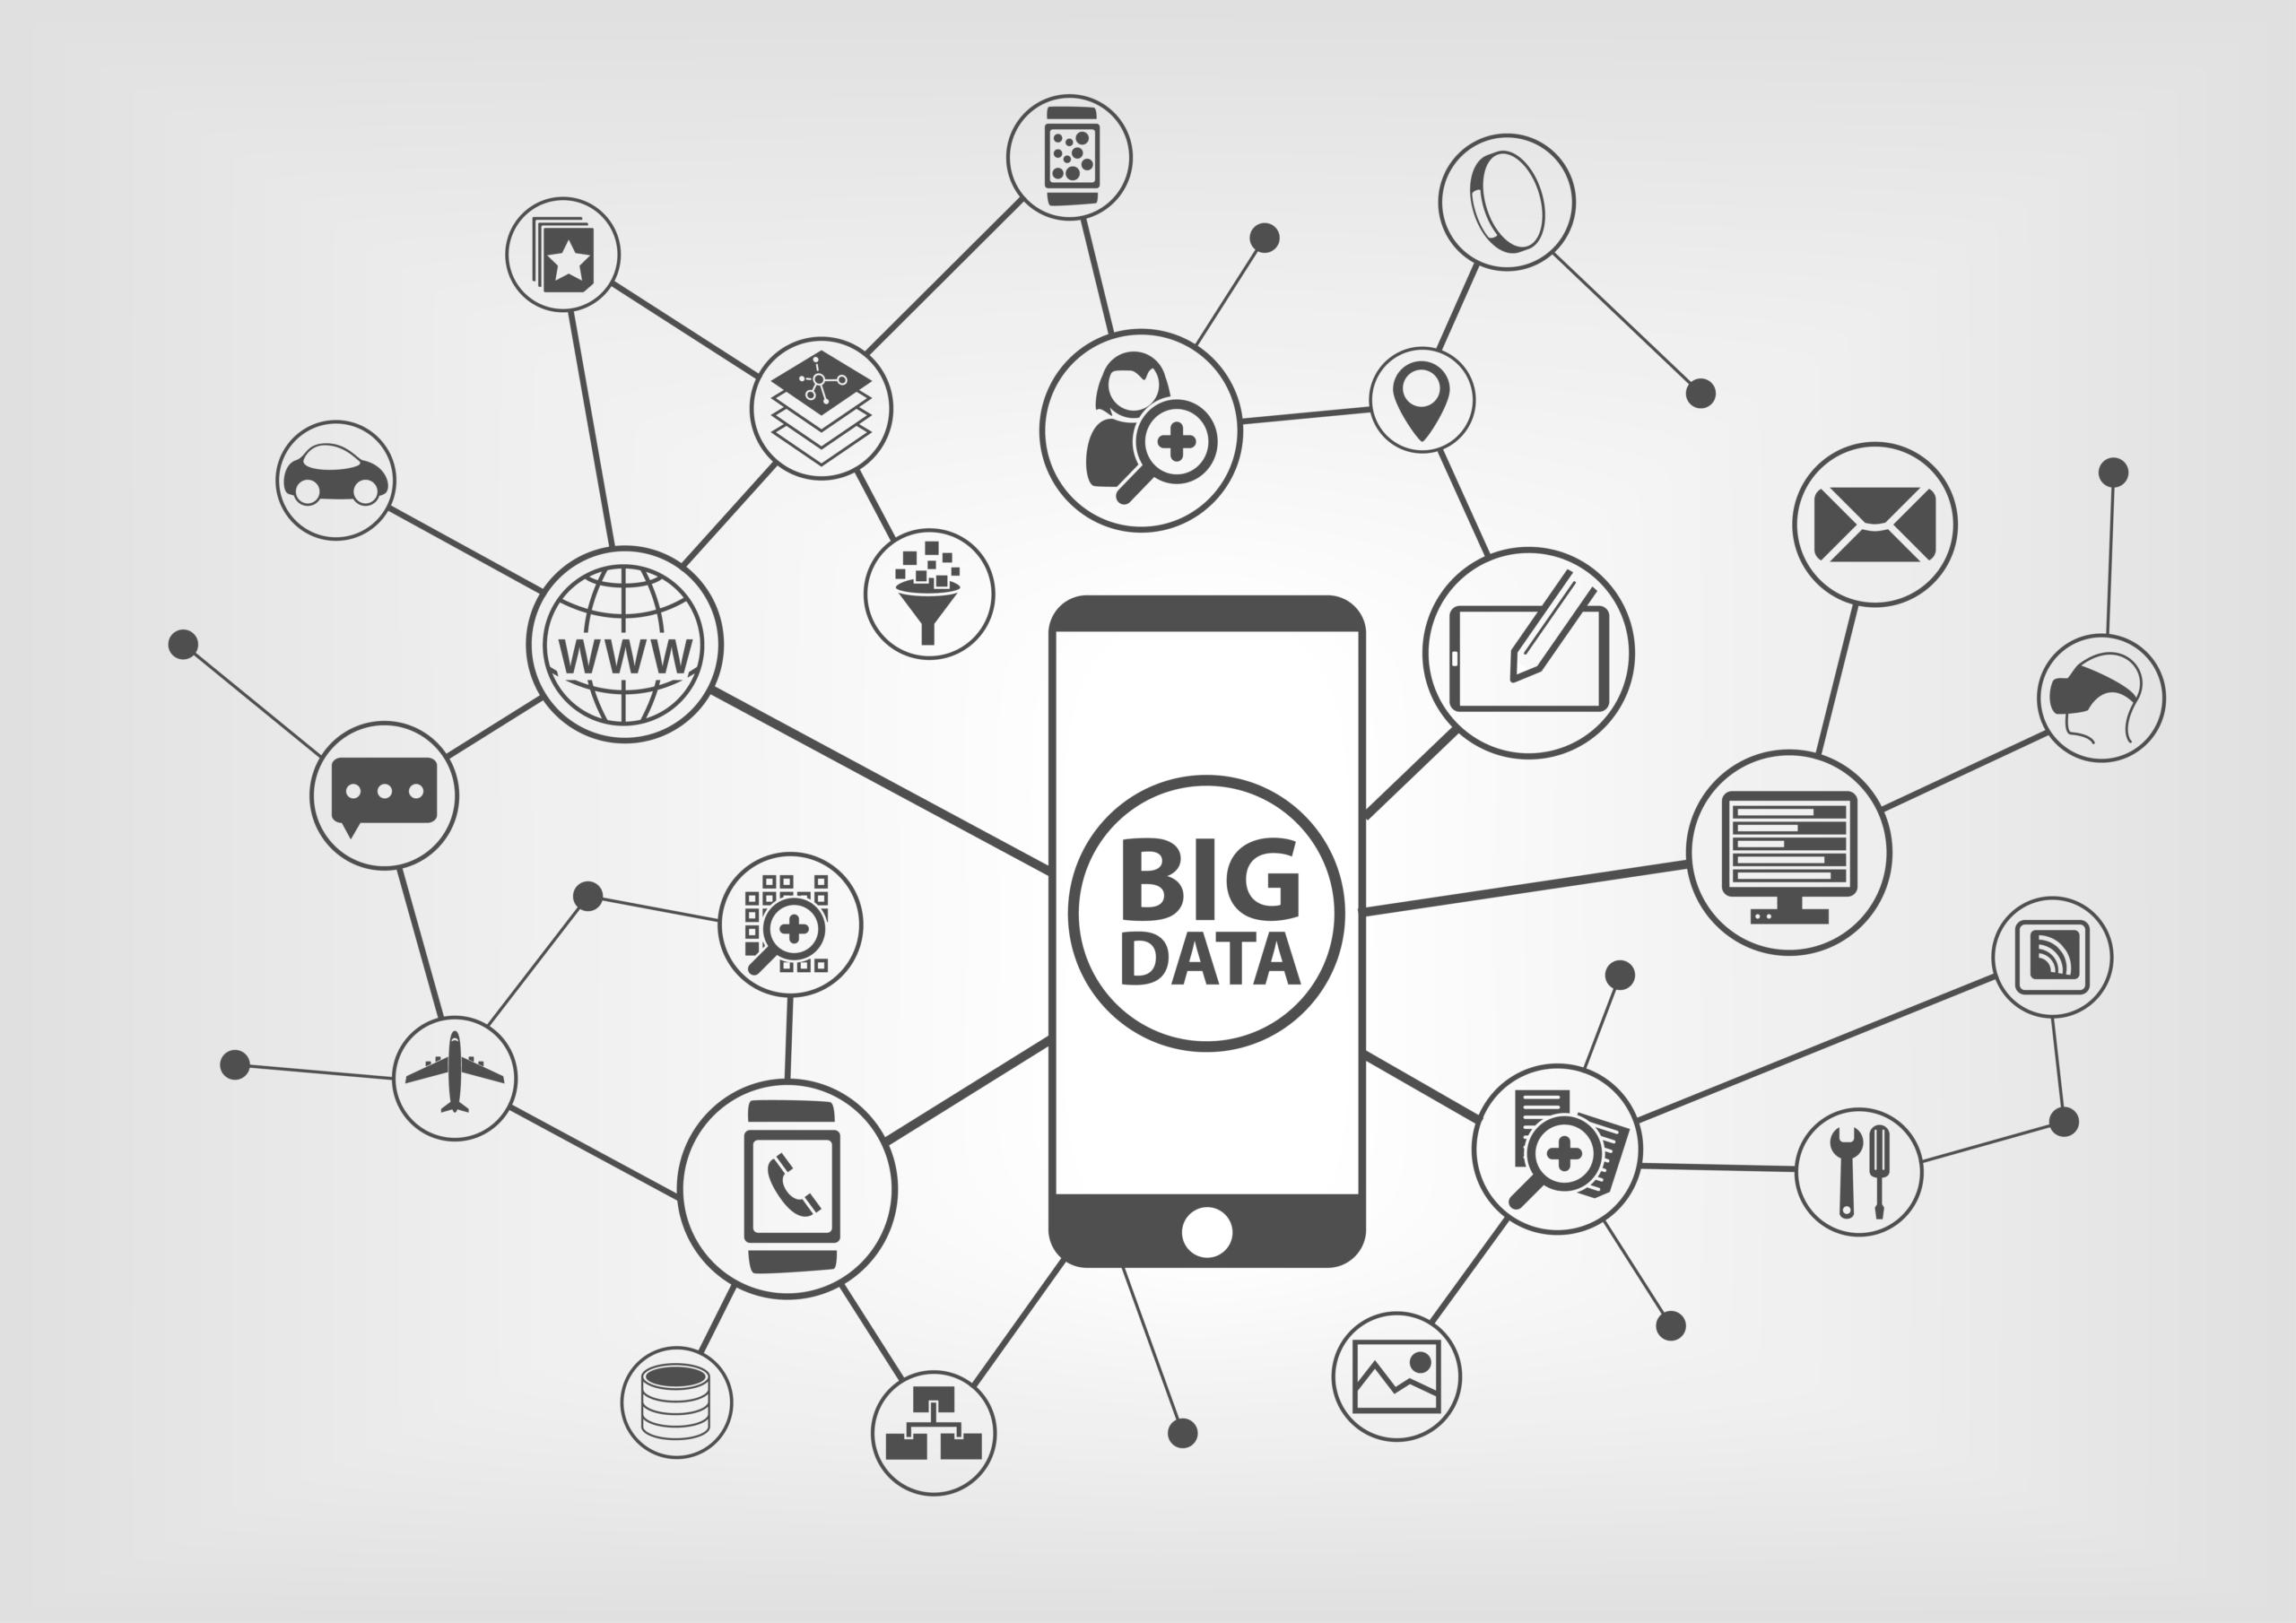 Big data'nın tanımı, sadece veri boyutu değil, verinin doğası ve işlenmesi için gereken özel yaklaşımlar da dikkate alınarak yapılır. Big data analitiği, bu büyük ve karmaşık veri setlerini işleyerek değerli bilgiler elde etmeyi ve daha iyi kararlar almada kullanmayı amaçlar.